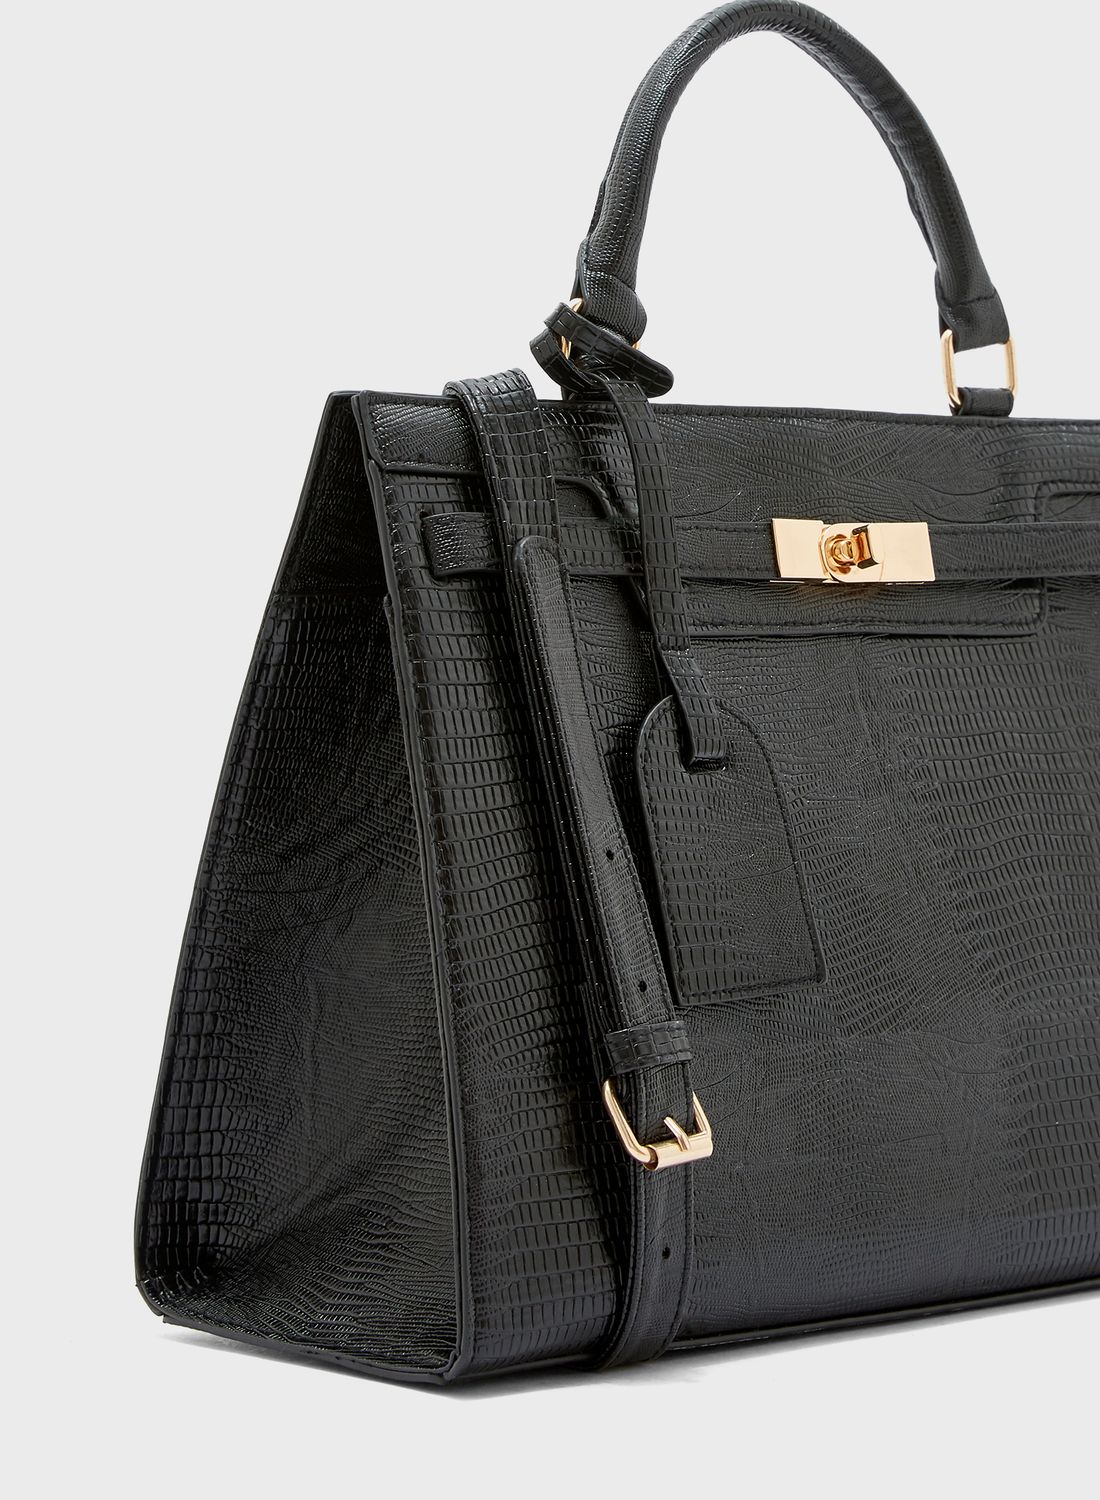 Croc Texture Handbag Black 